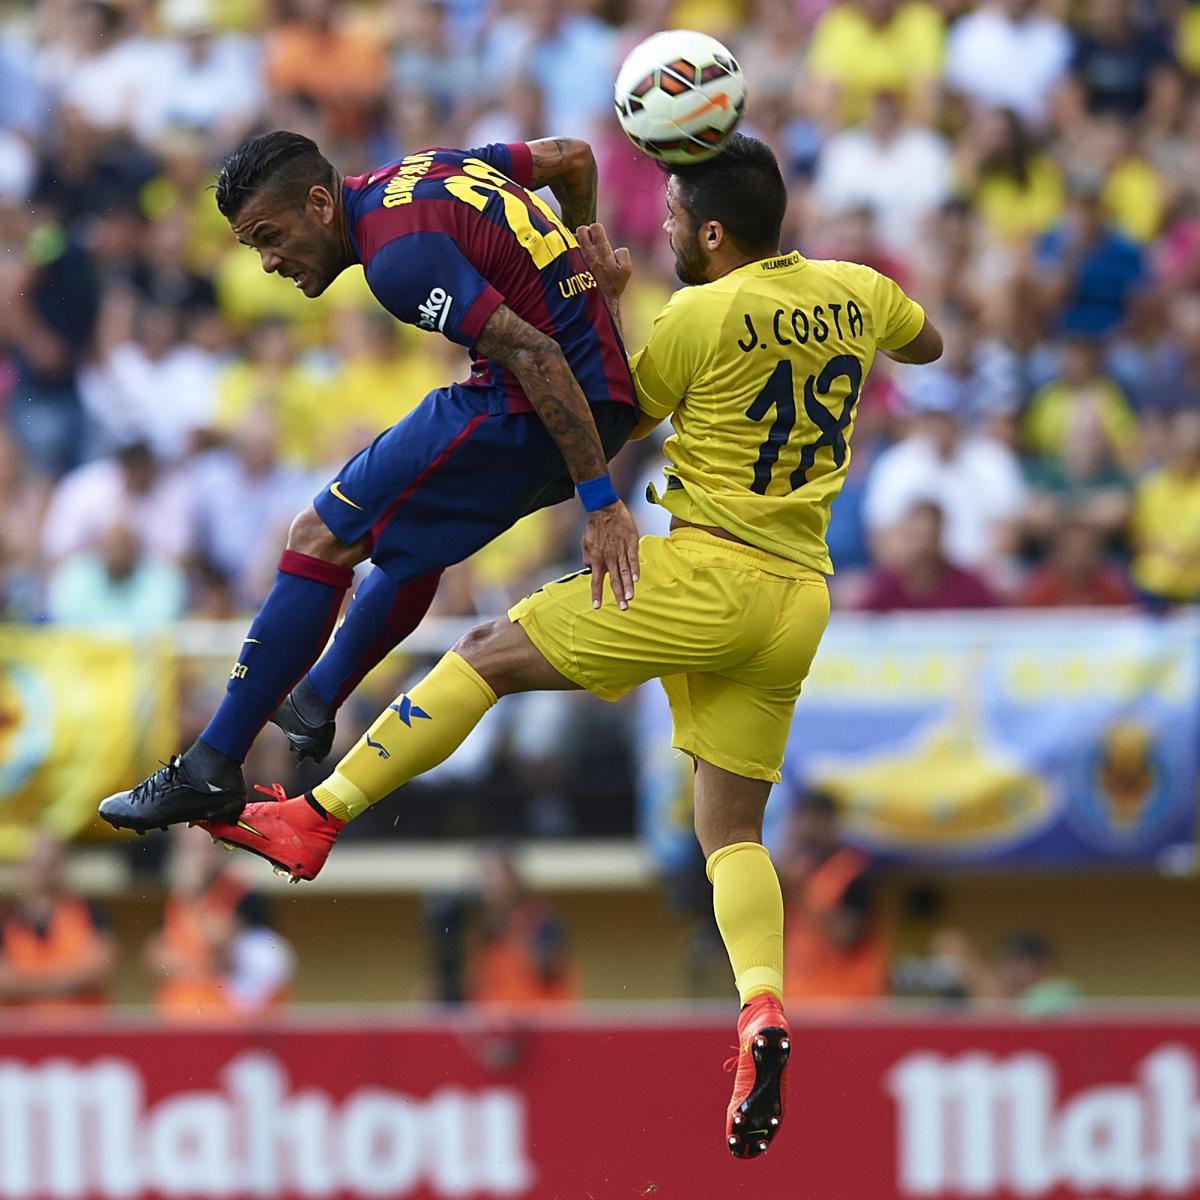 Barca Vs Villarreal : Villarreal vs Barcelona, La Liga: Team News, Possible ...